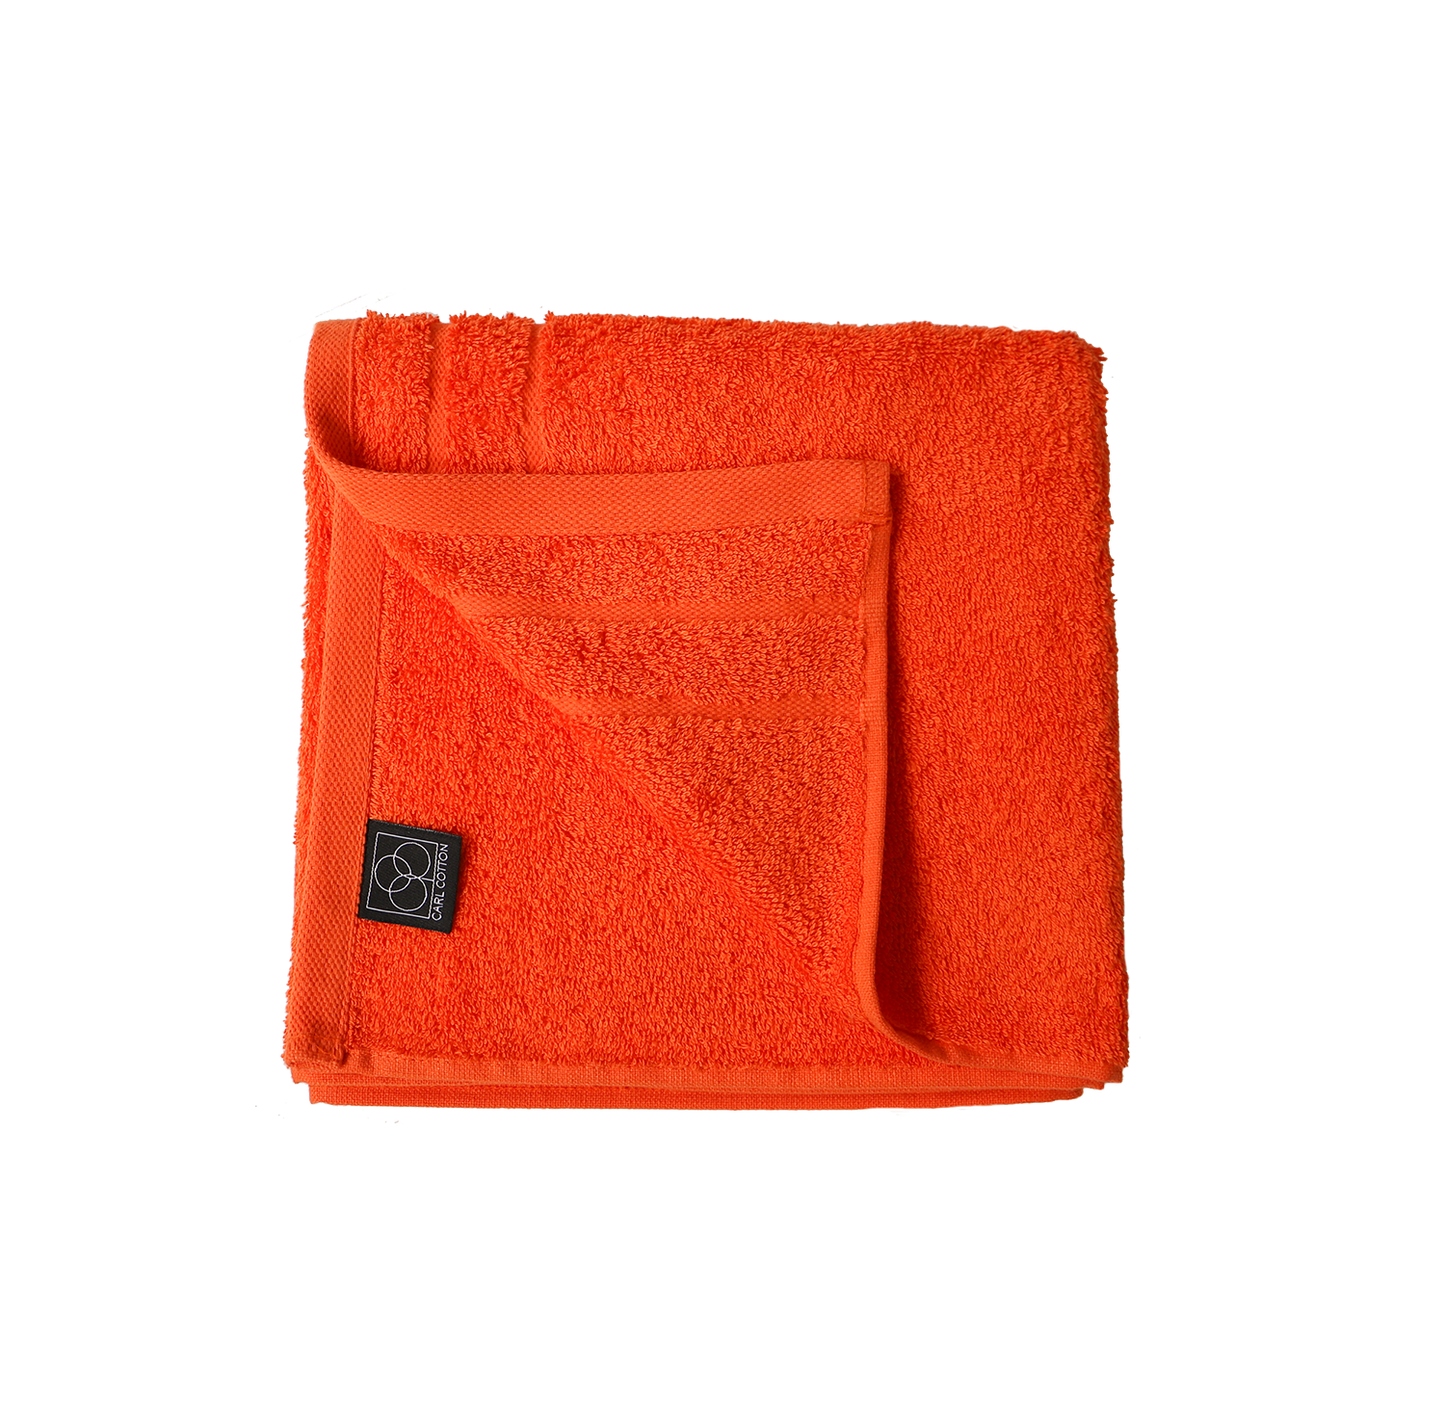 Handtuch CARL COTTON "Trend" Orange